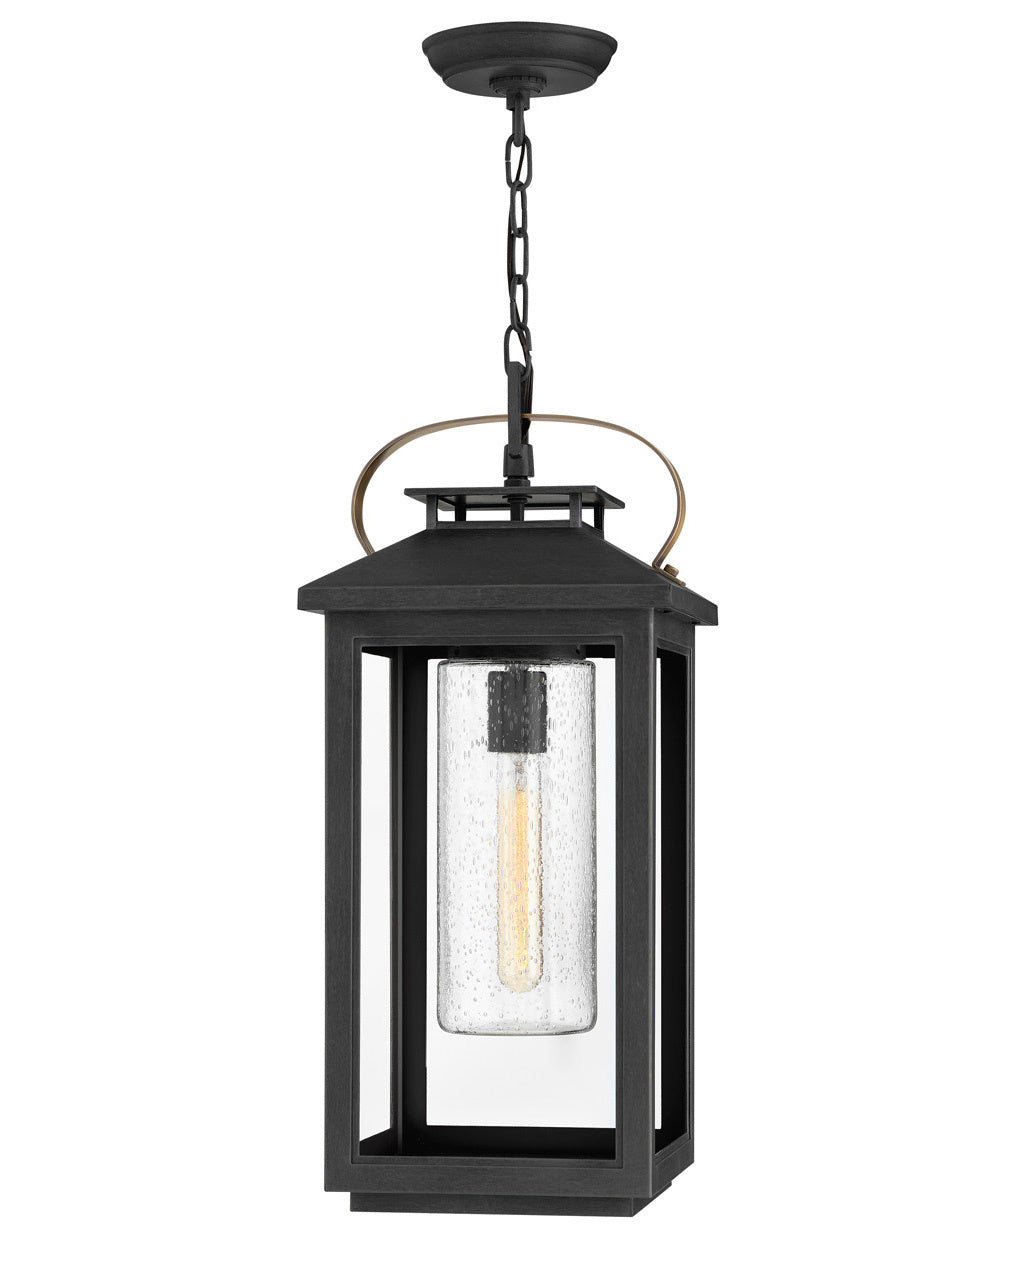 Hinkley Canada - LED Hanging Lantern - Atwater - Black- Union Lighting Luminaires Decor